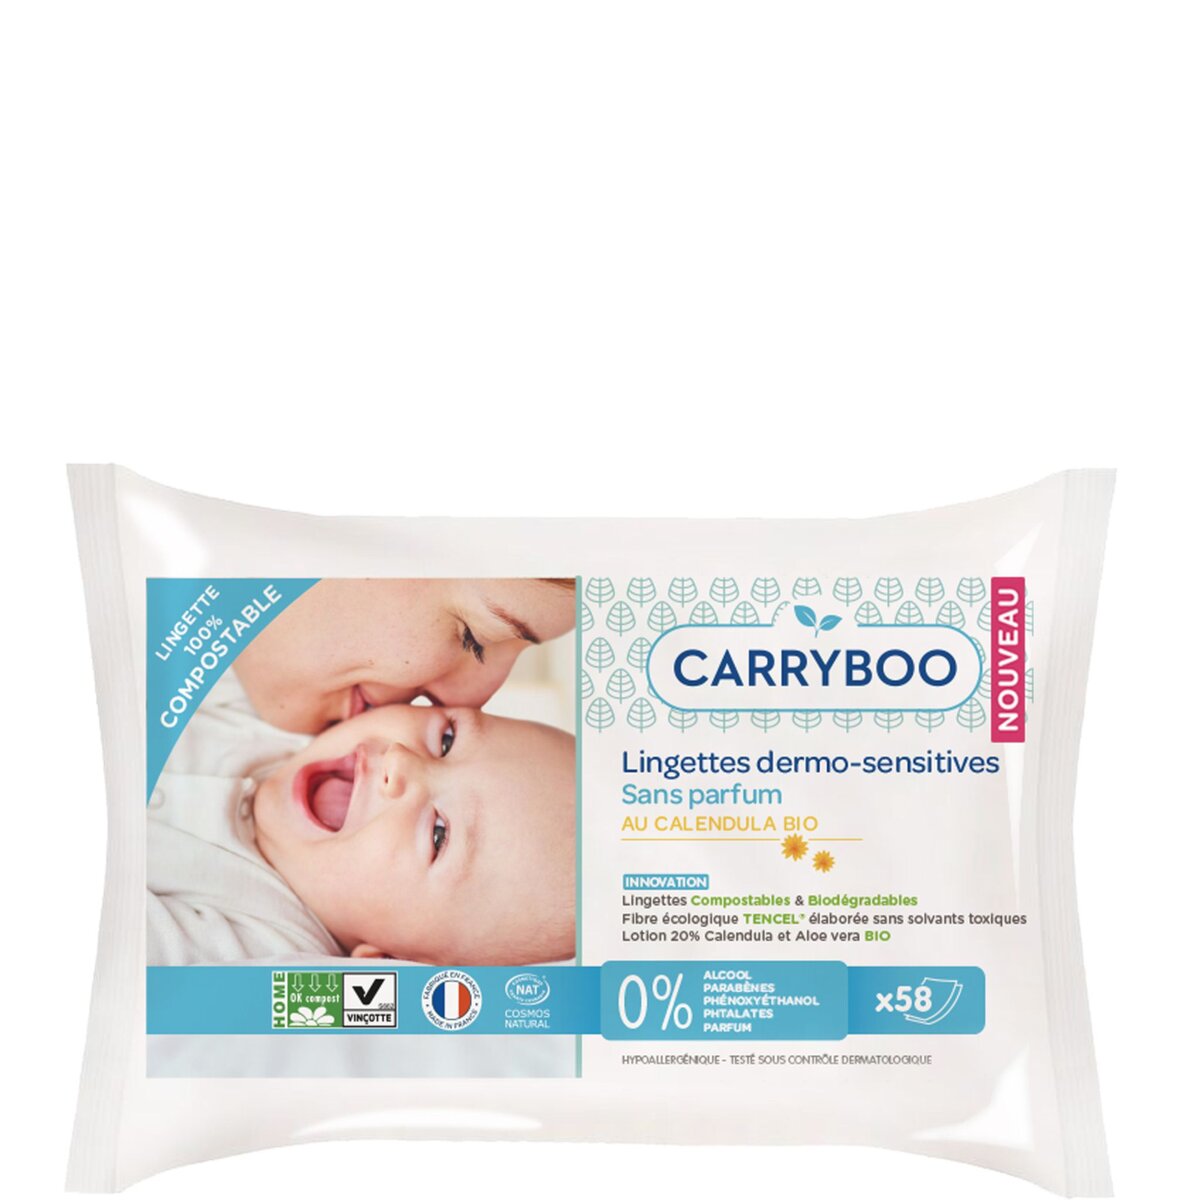 CARRYBOO Lingettes dermo-sensitives au calendula bio pour bébé 58 lingettes